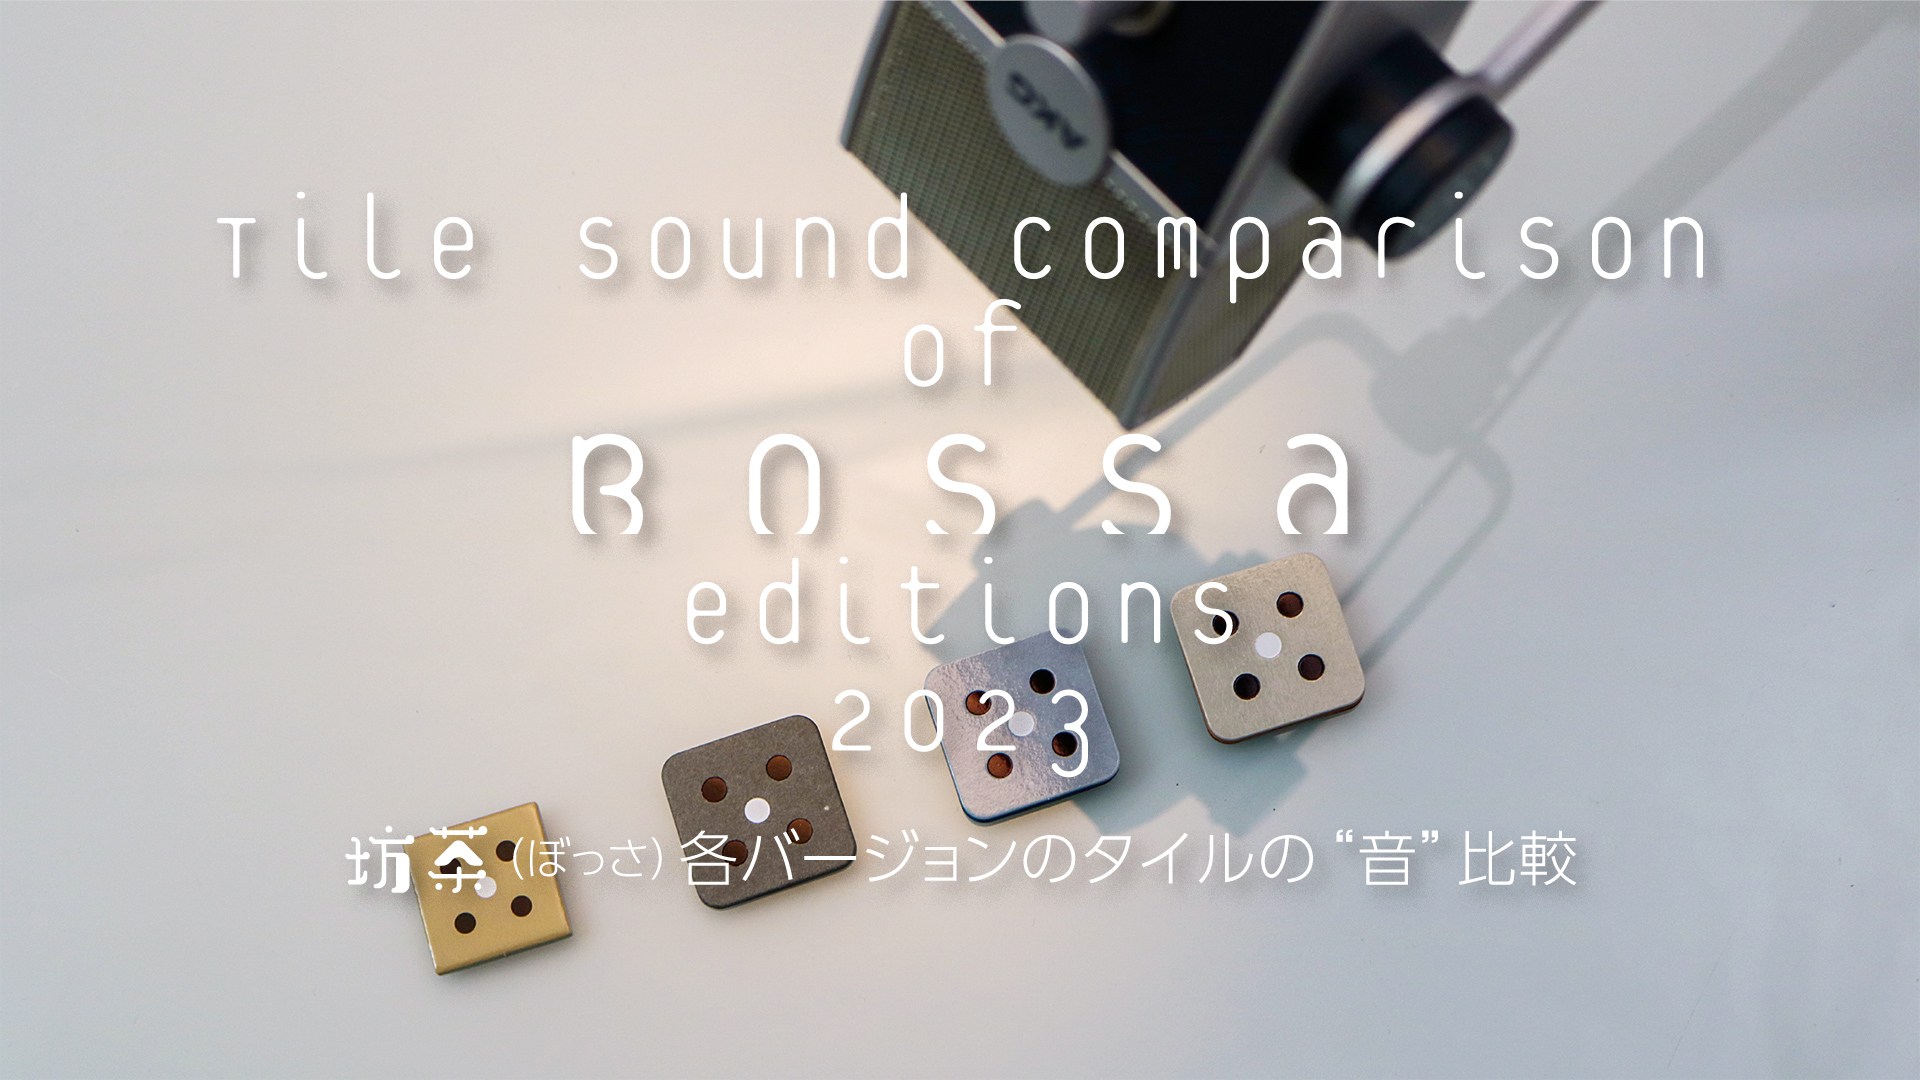 Tile Sound Comparison of Bossa, Board Game PV